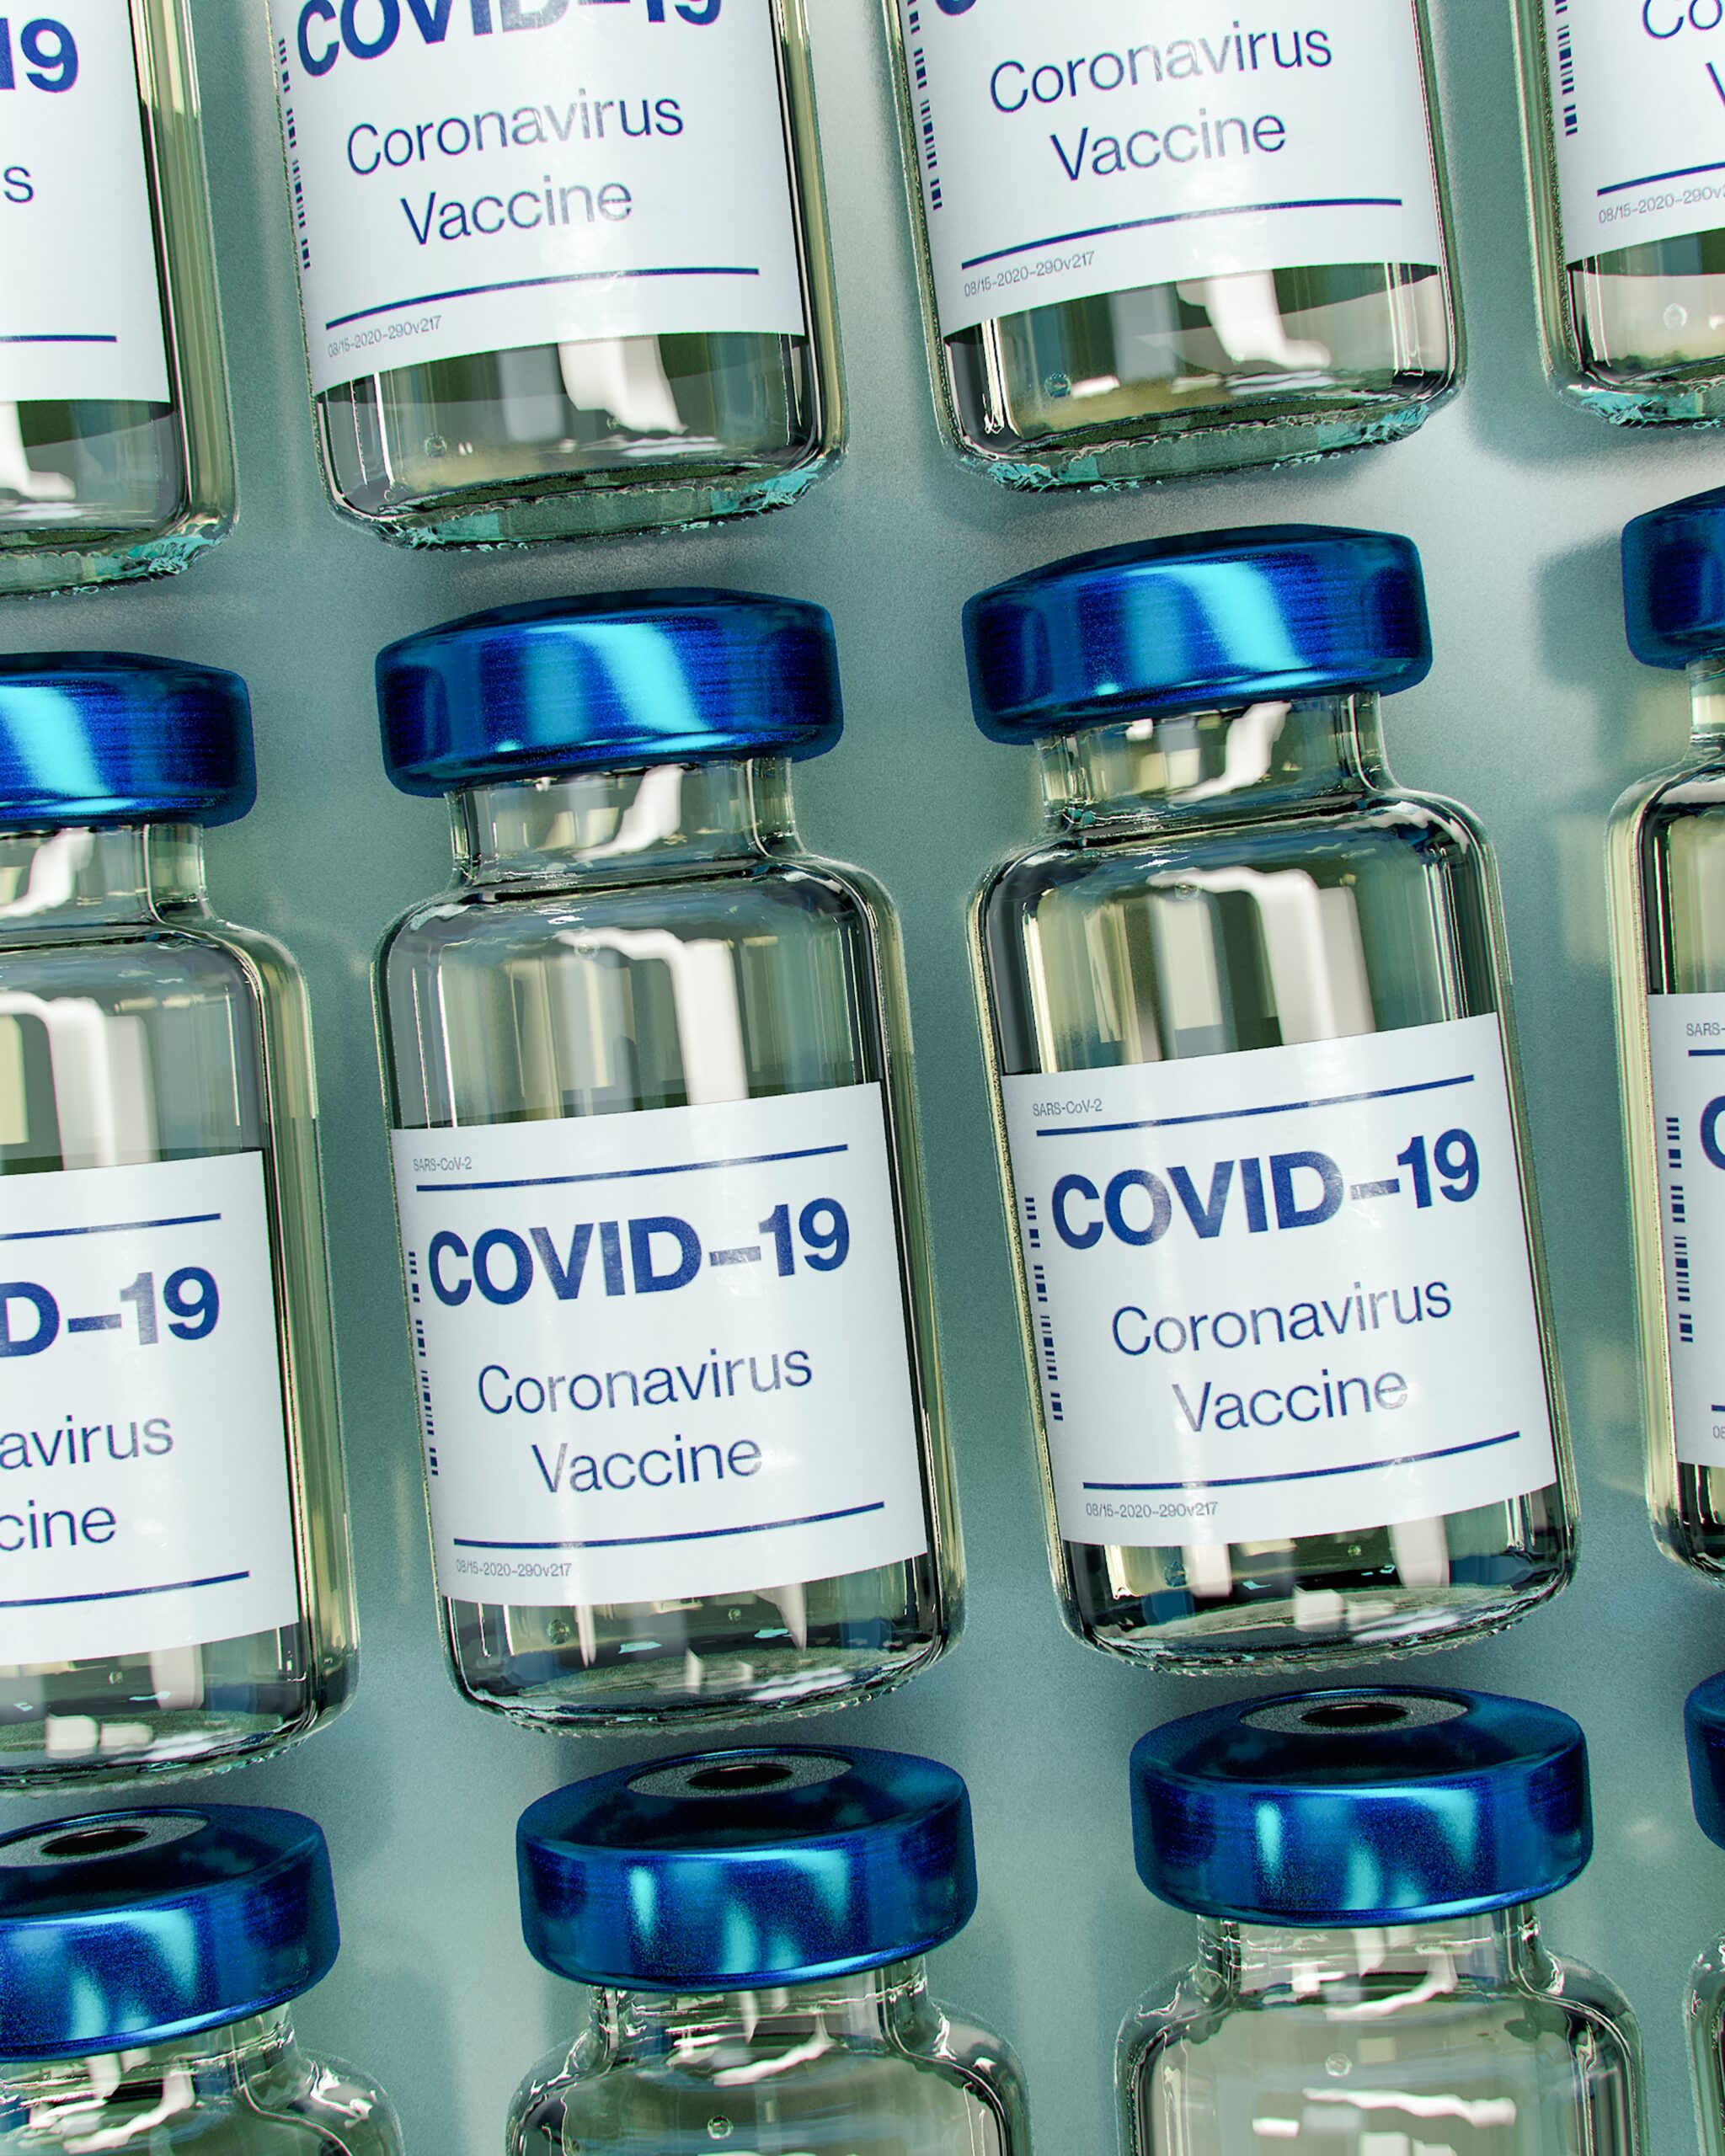 Best Defense Against Vaccine Mandates